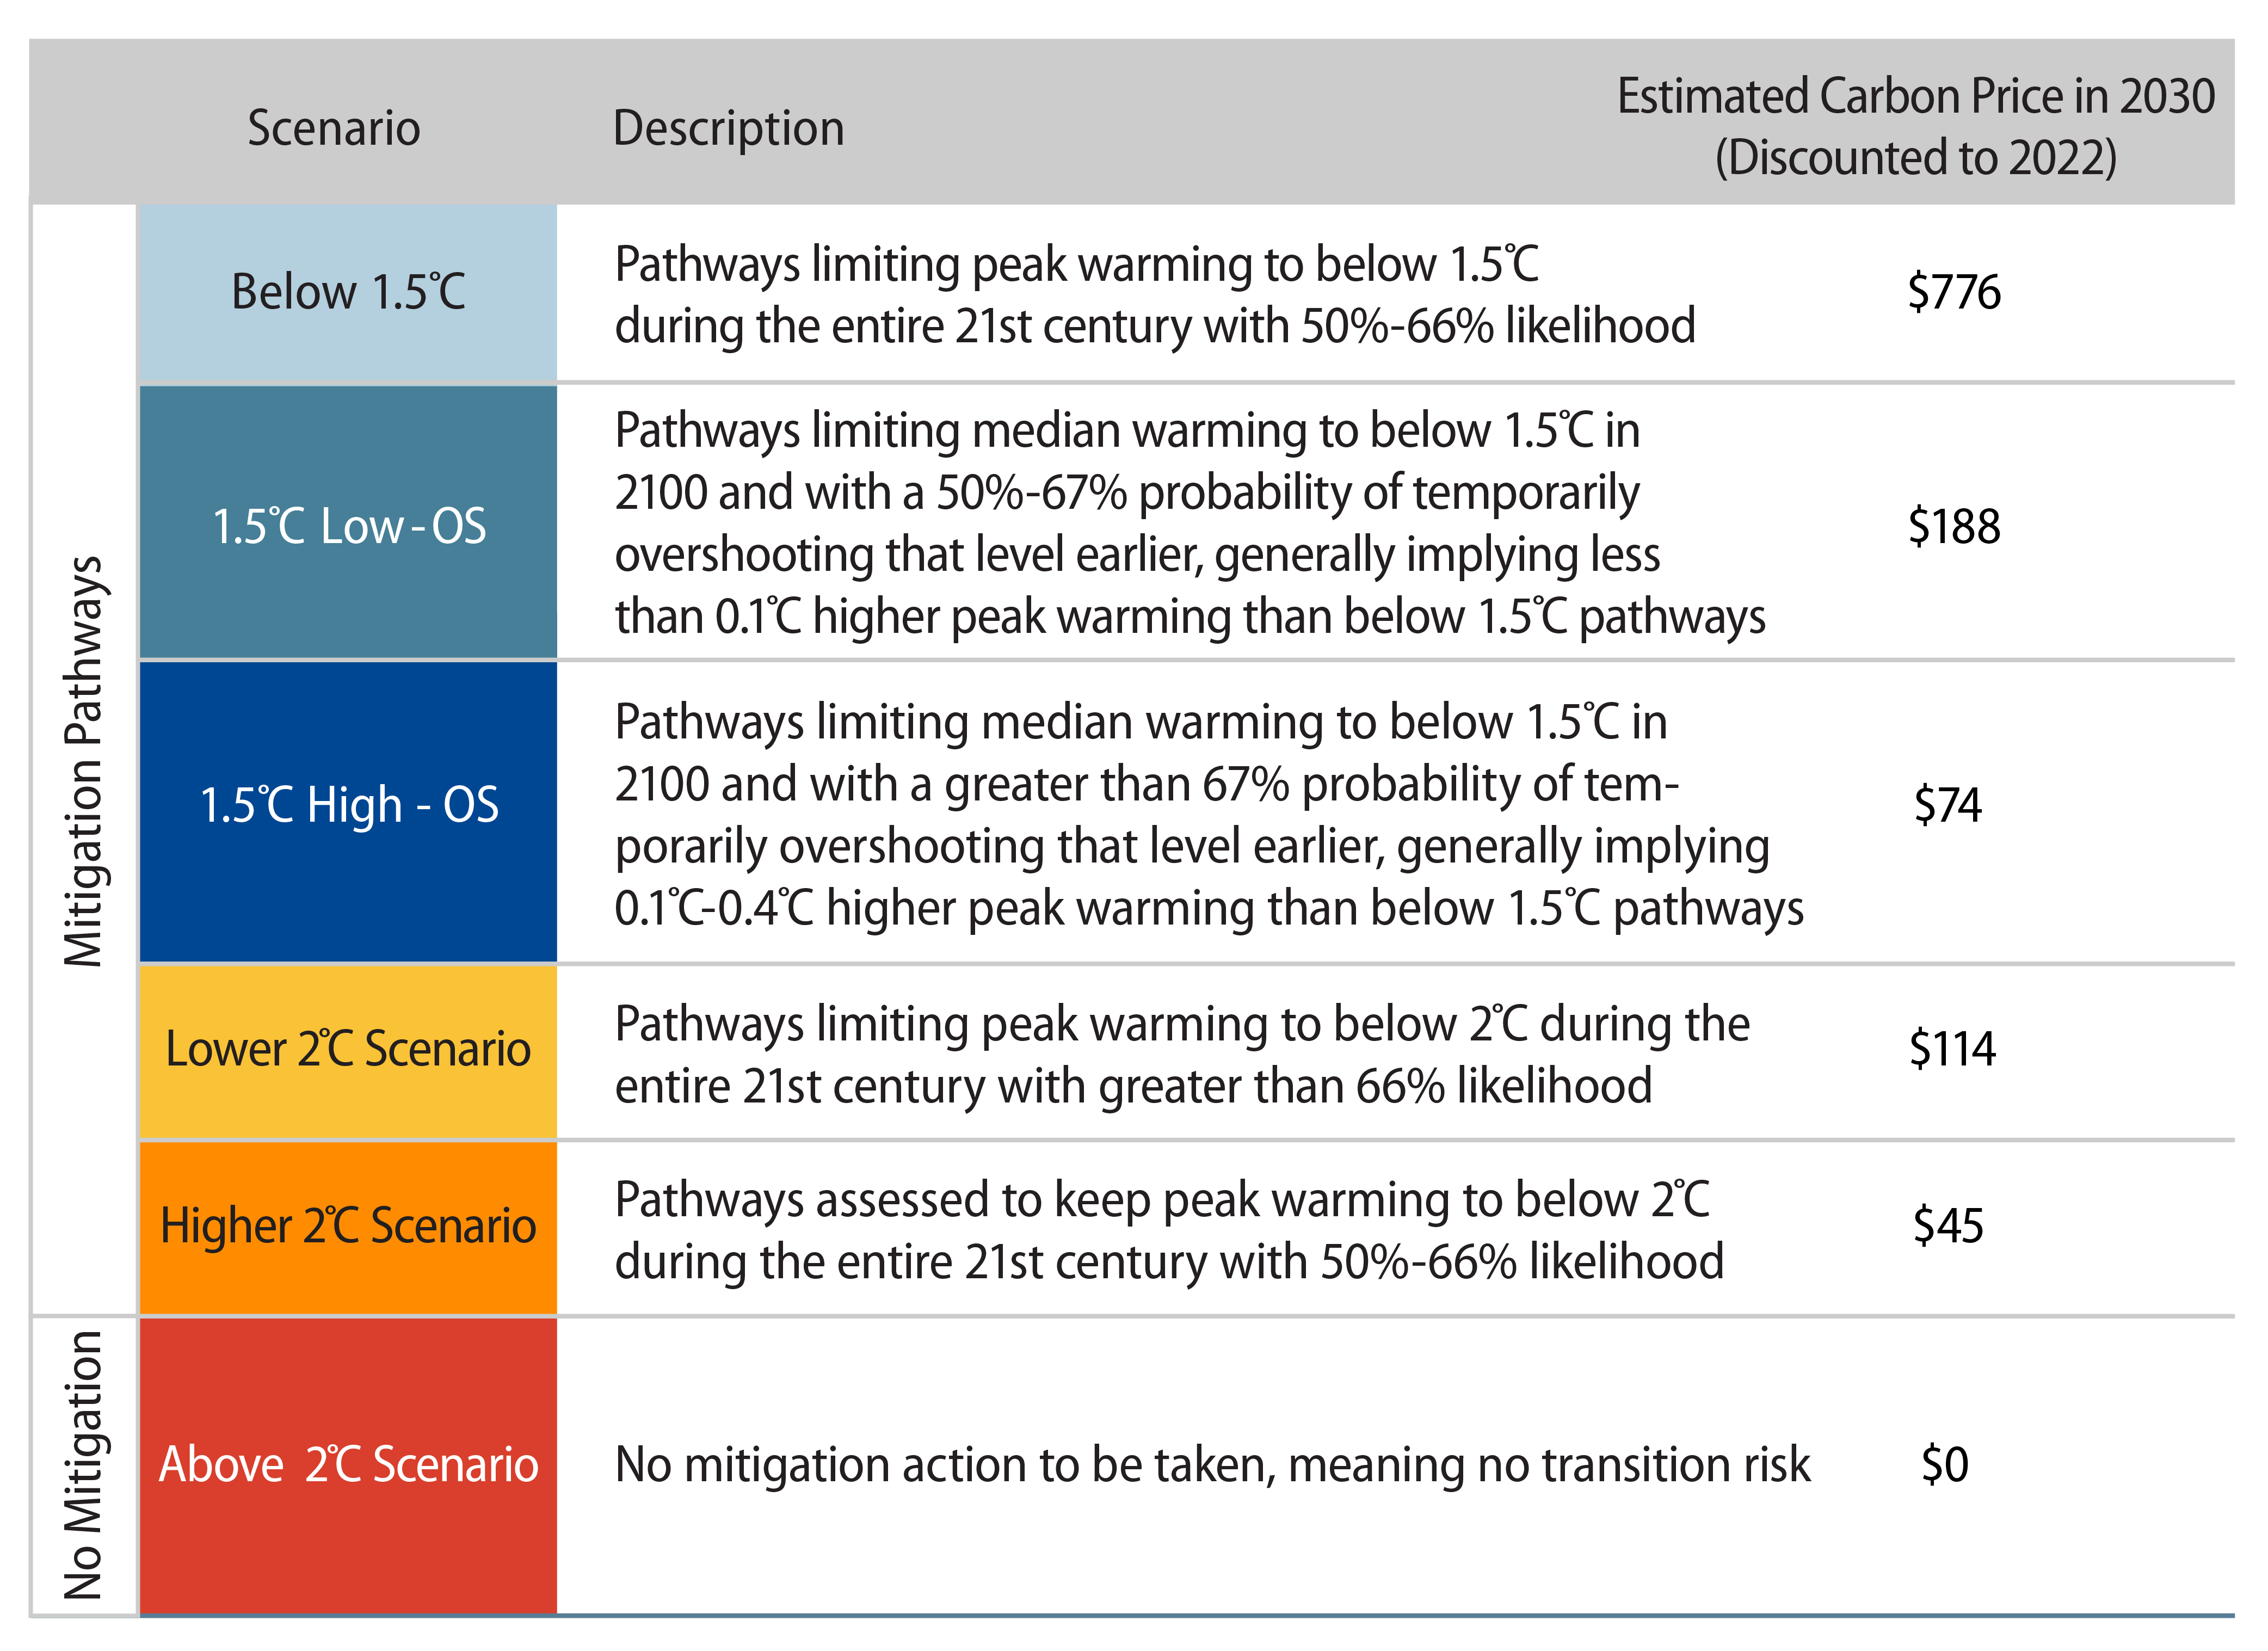 Explore Carbon Prices Under Different IPCC Scenarios